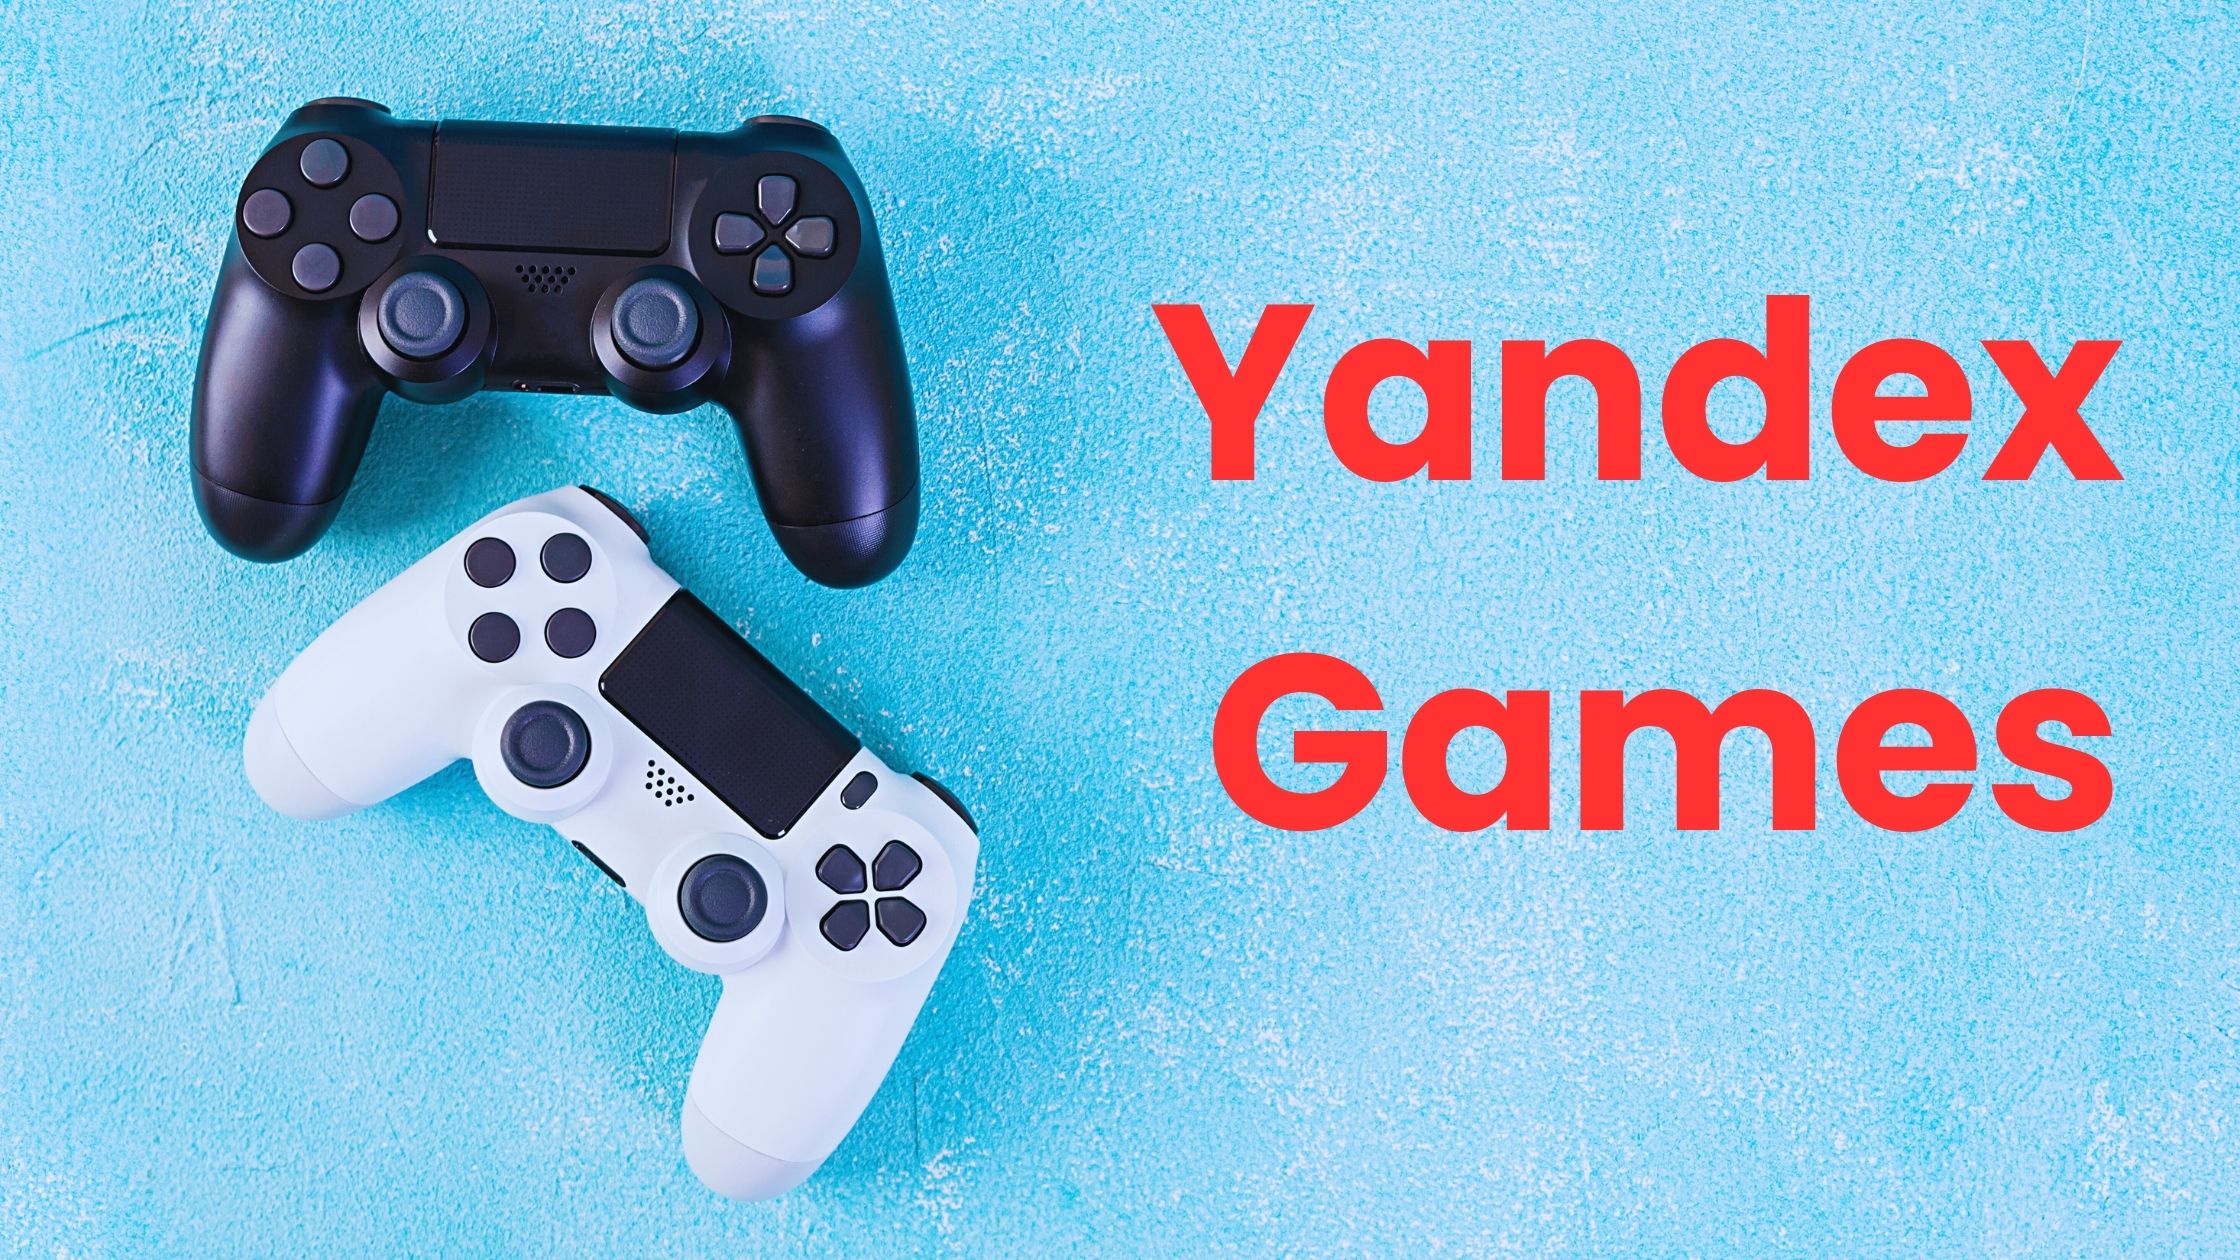 Erkunden der vielfältigen Spielebibliothek von Yandex Games